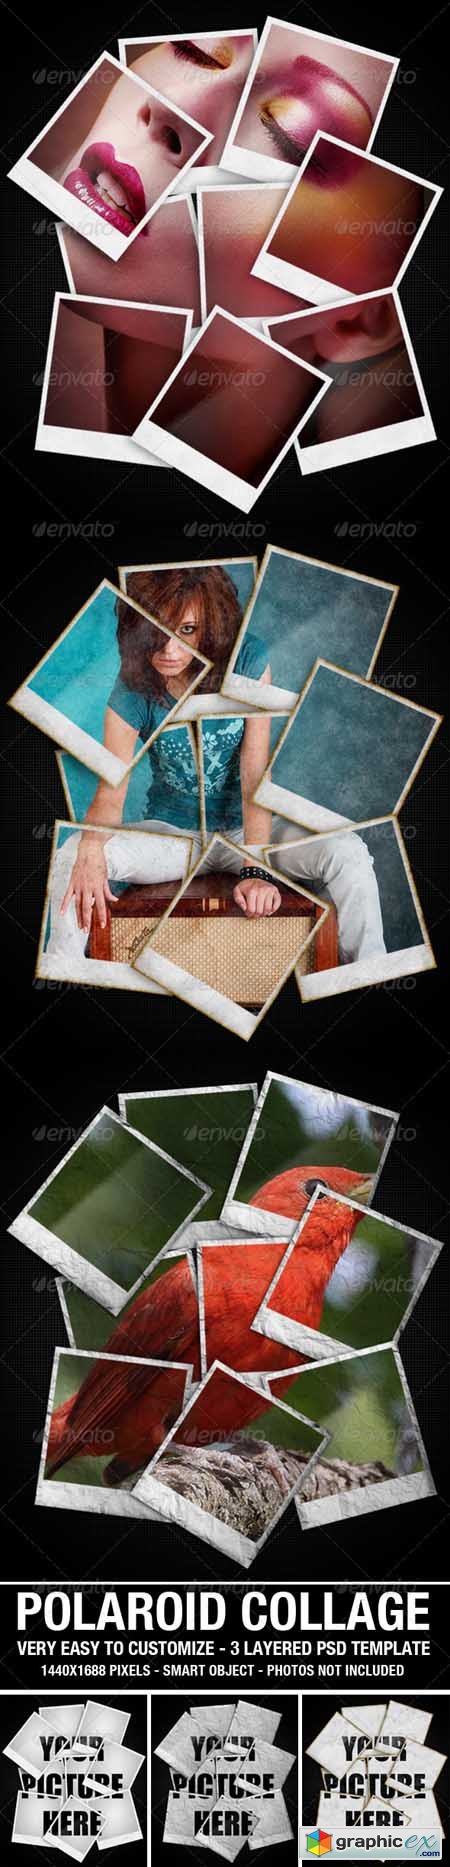 Polaroid Collage Photo Template